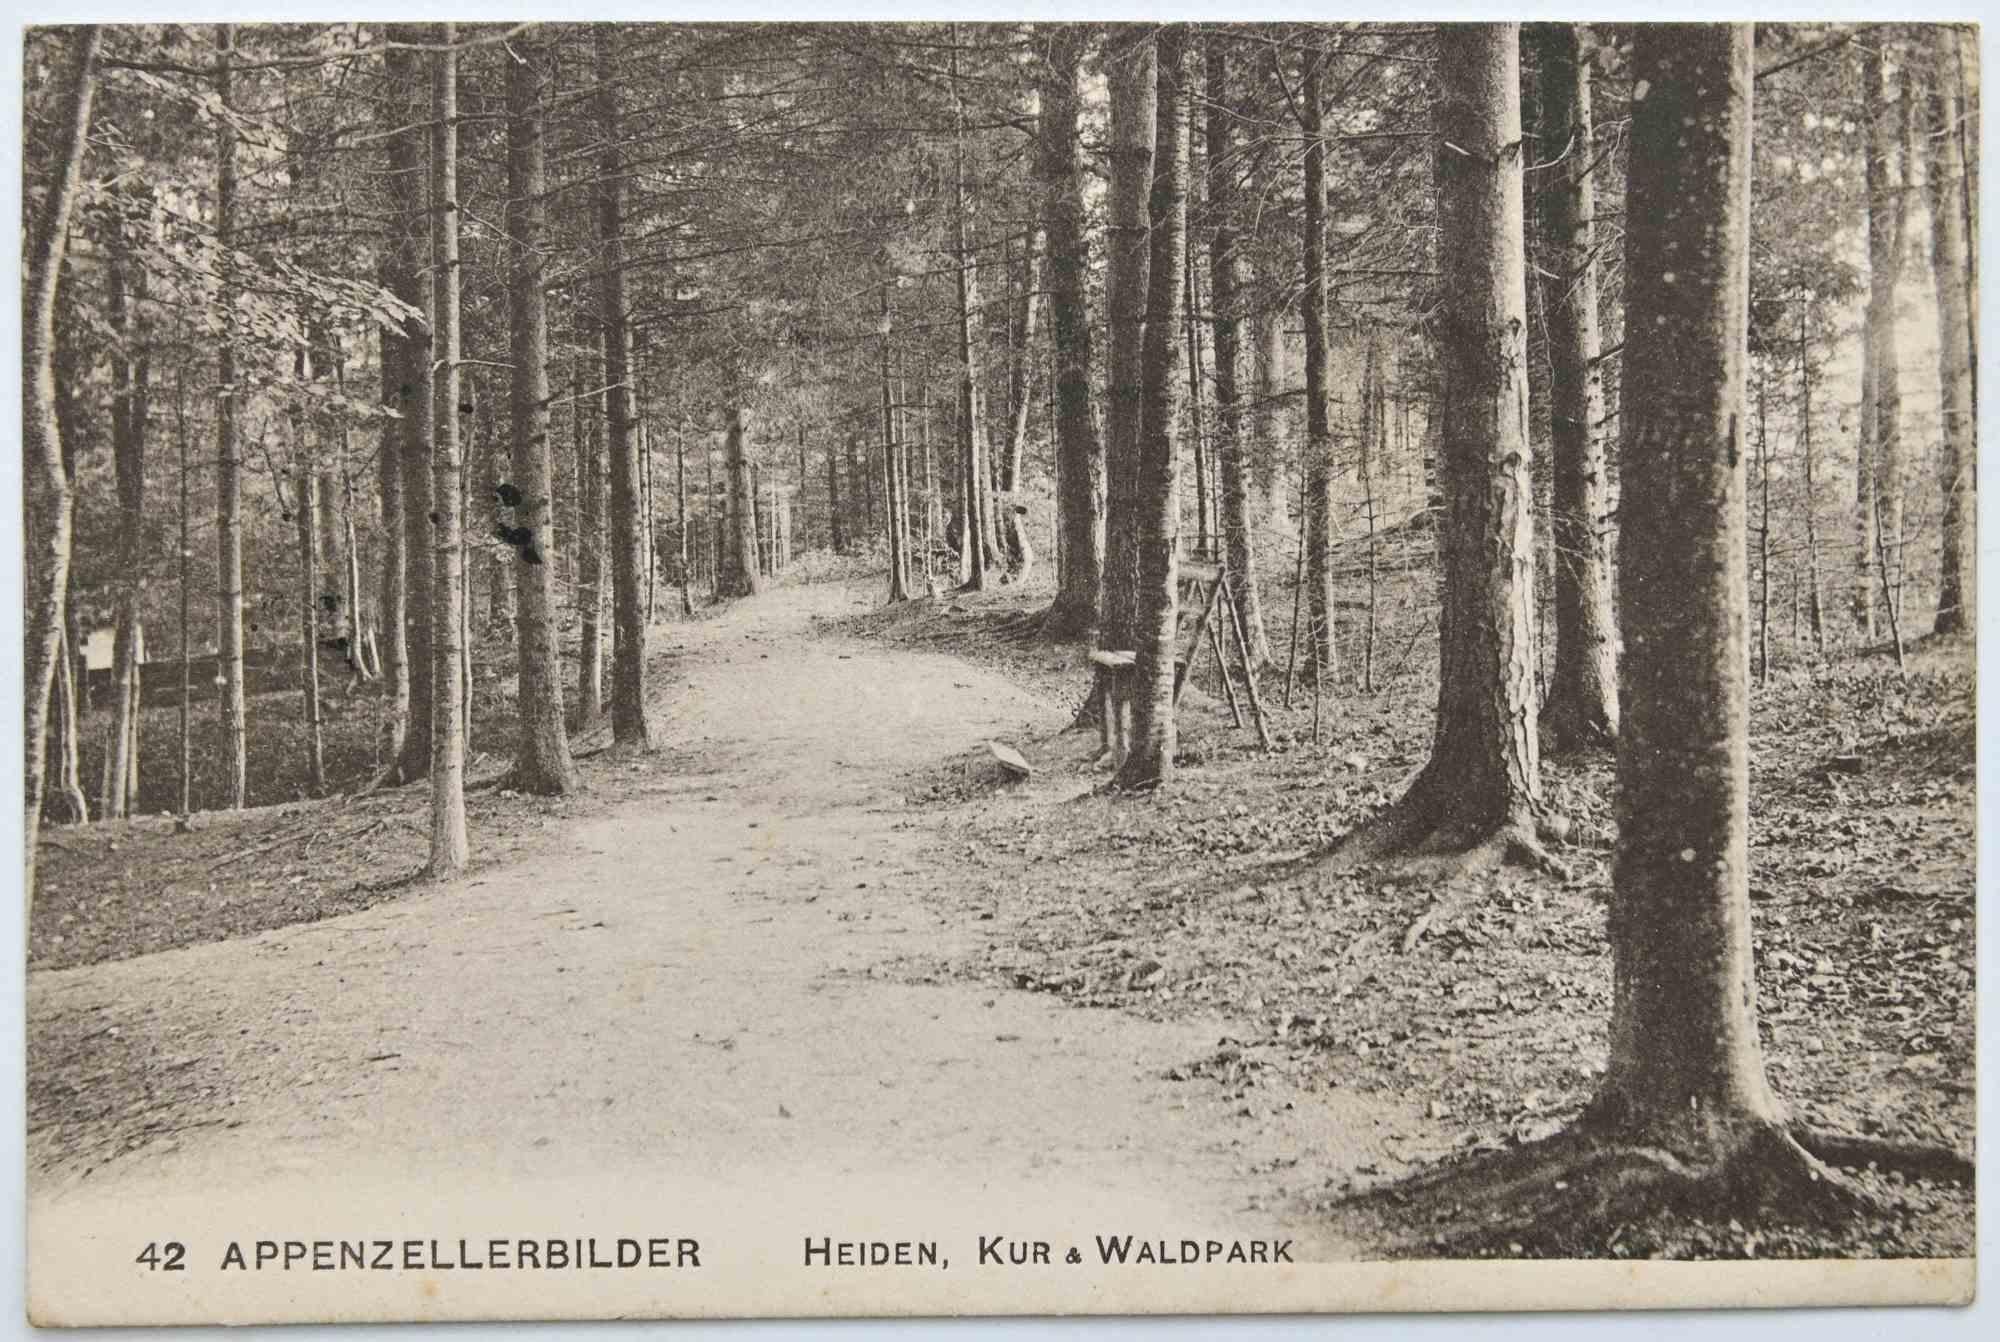 Vintage Postcard of Appenzellerbilder, Heiden, Kur & Waldpark - 1957 - Art by Unknown